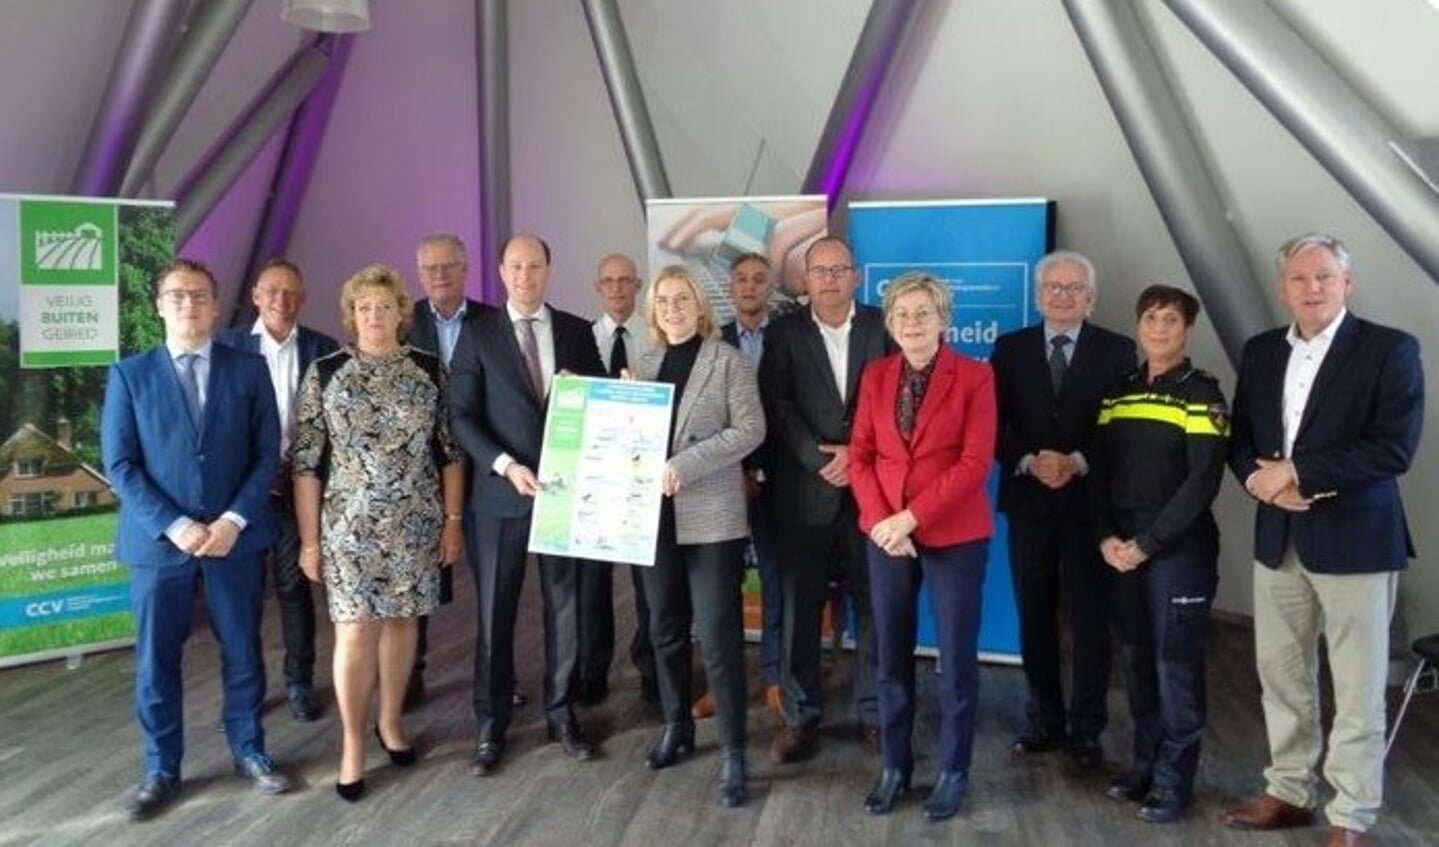 Acht gemeentes uit Noord-Limburg geven het startsein